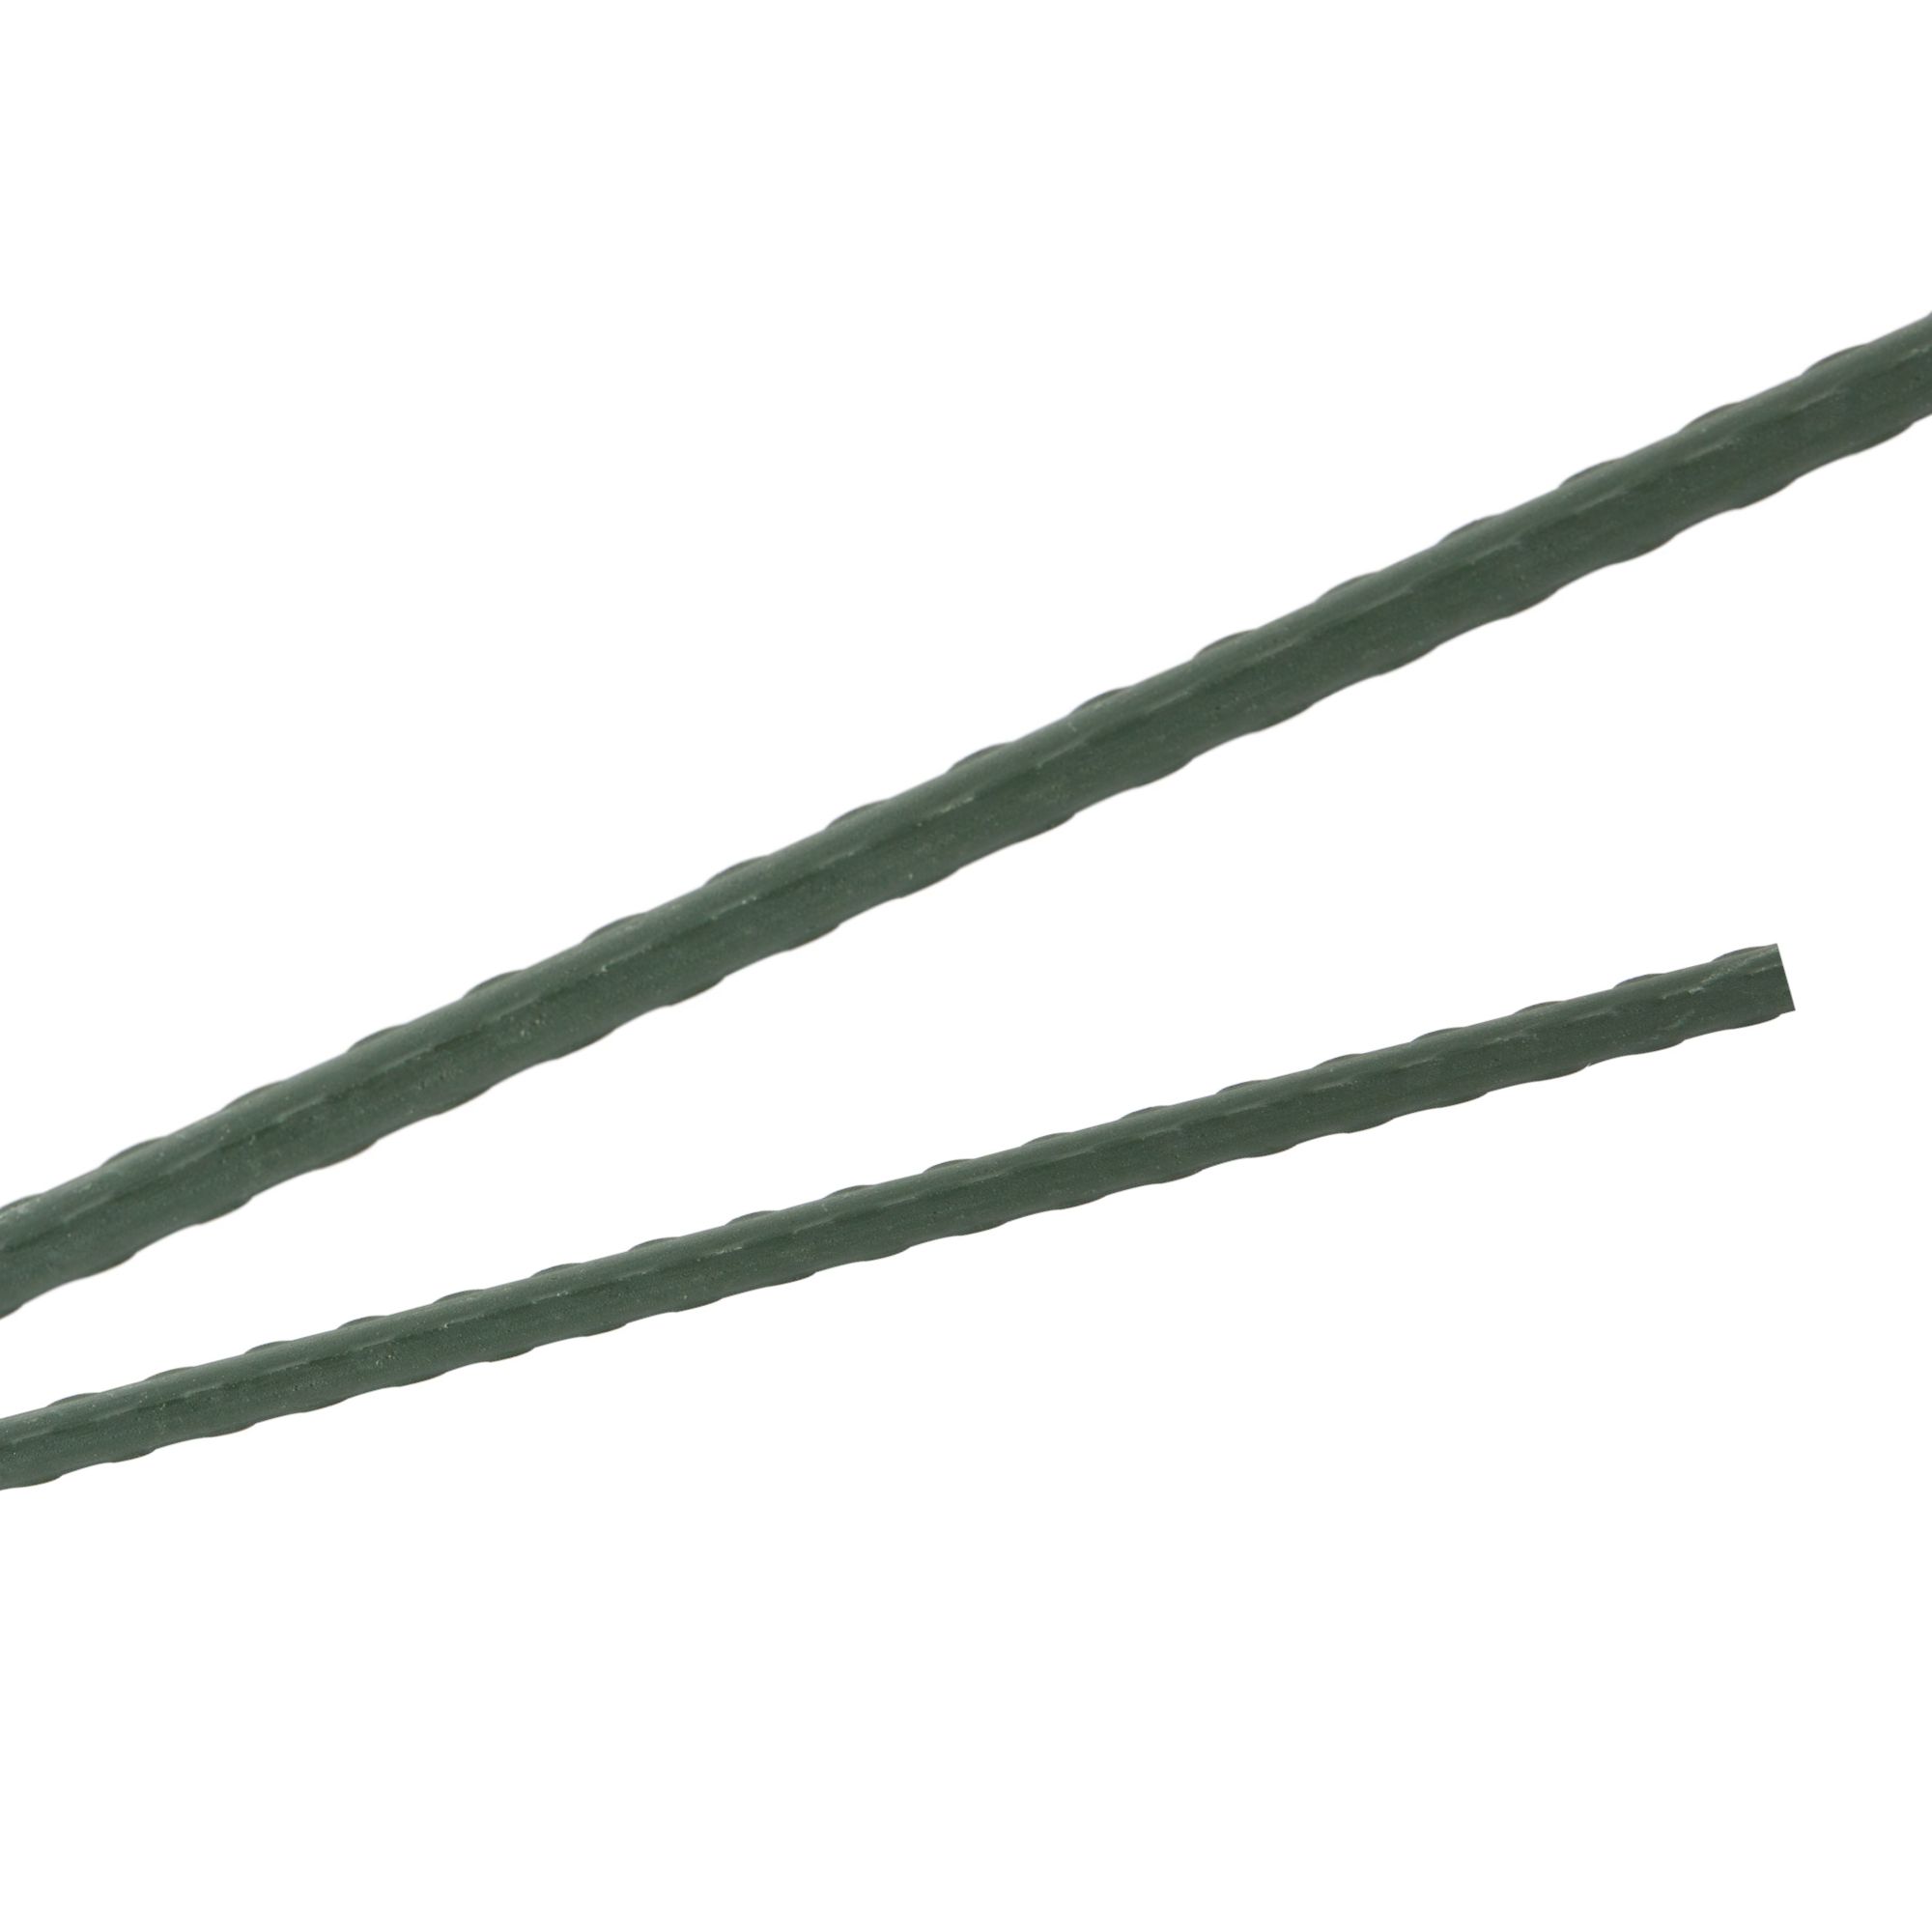 Tyč podpěrná, 16mm, 180cm, kov+PVC, zelená 0.217000 Kg GIGA Sklad20 45659 143